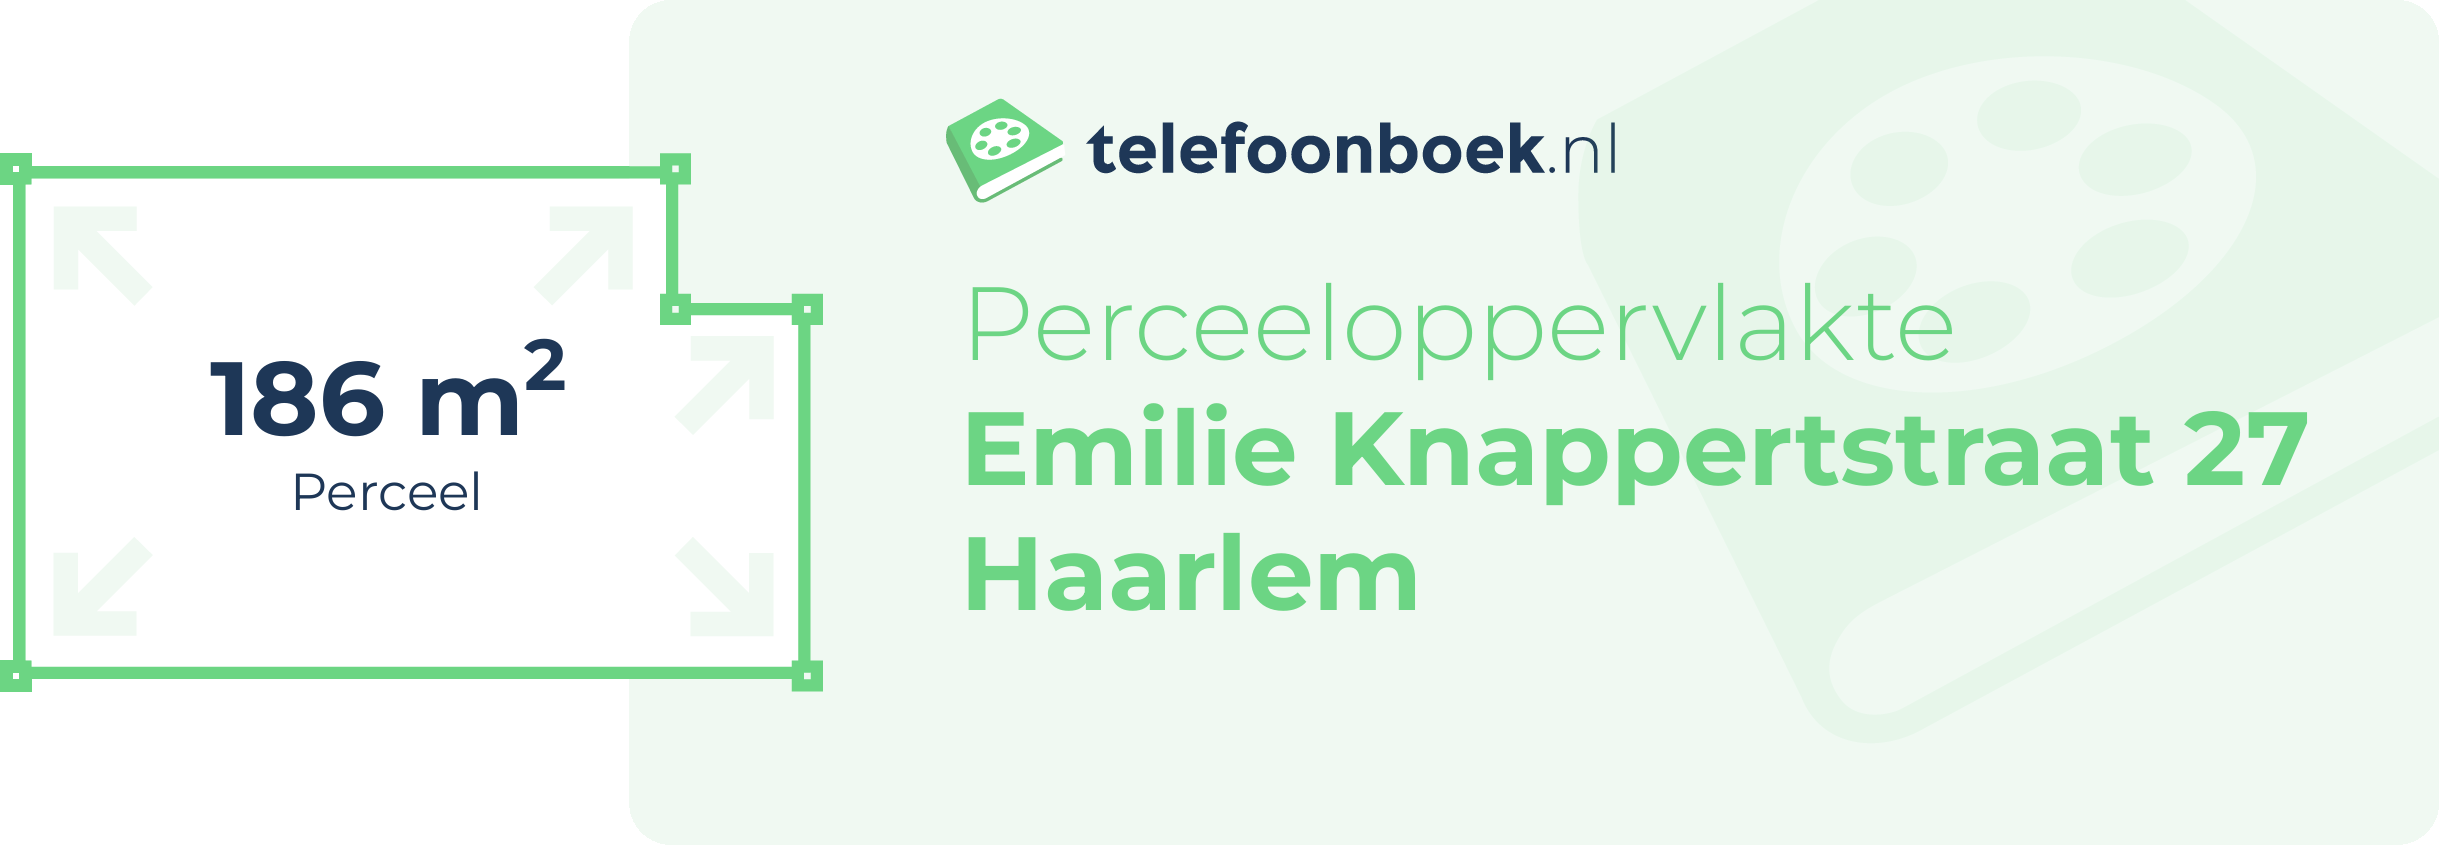 Perceeloppervlakte Emilie Knappertstraat 27 Haarlem